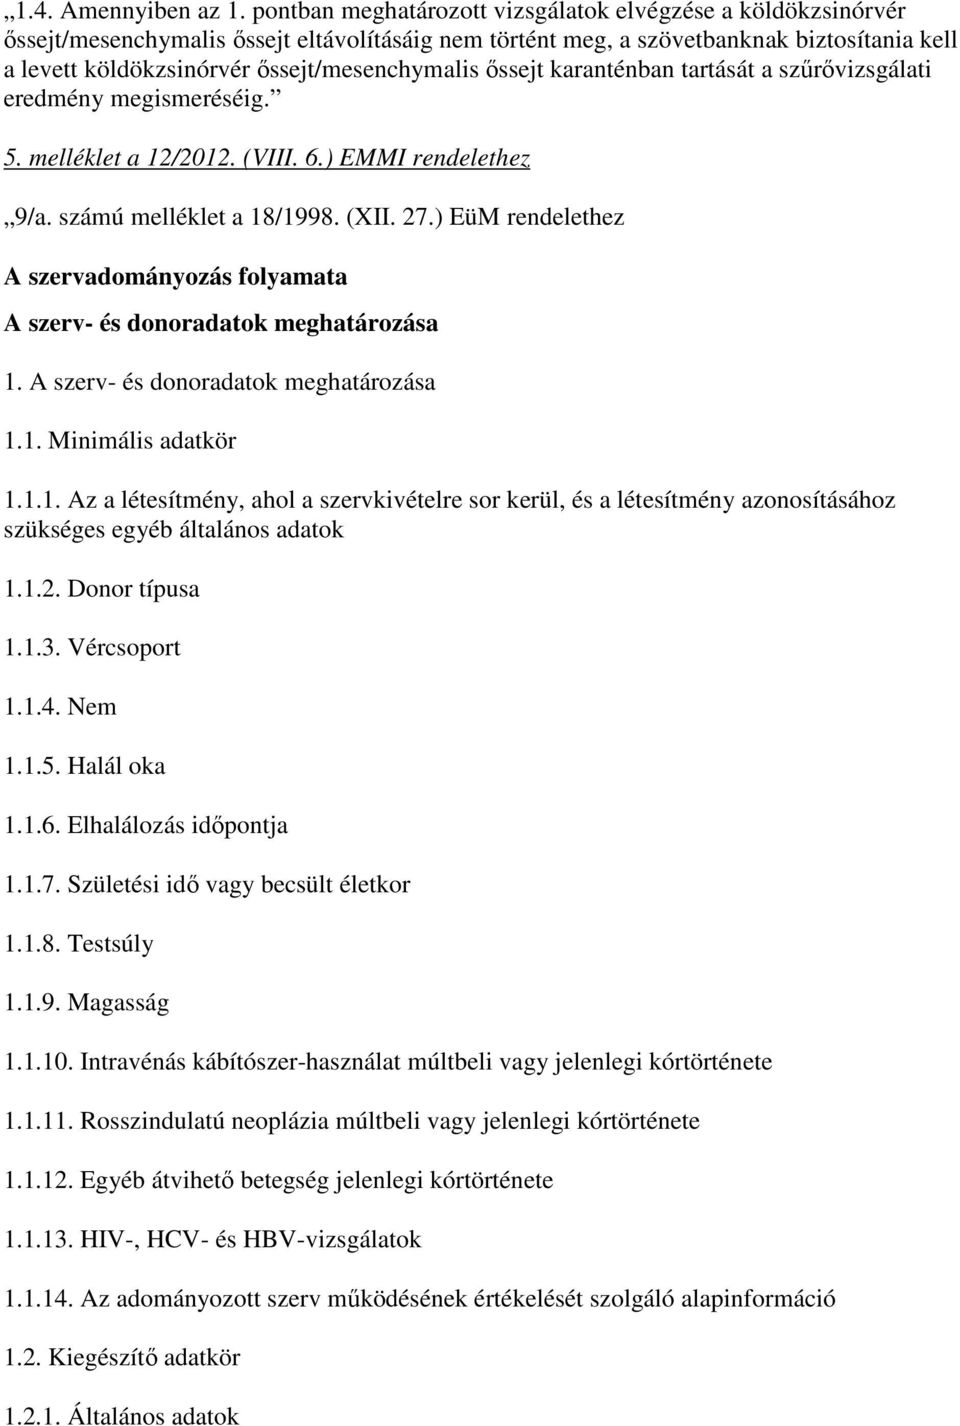 ıssejt/mesenchymalis ıssejt karanténban tartását a szőrıvizsgálati eredmény megismeréséig. 5. melléklet a 12/2012. (VIII. 6.) EMMI rendelethez 9/a. számú melléklet a 18/1998. (XII. 27.